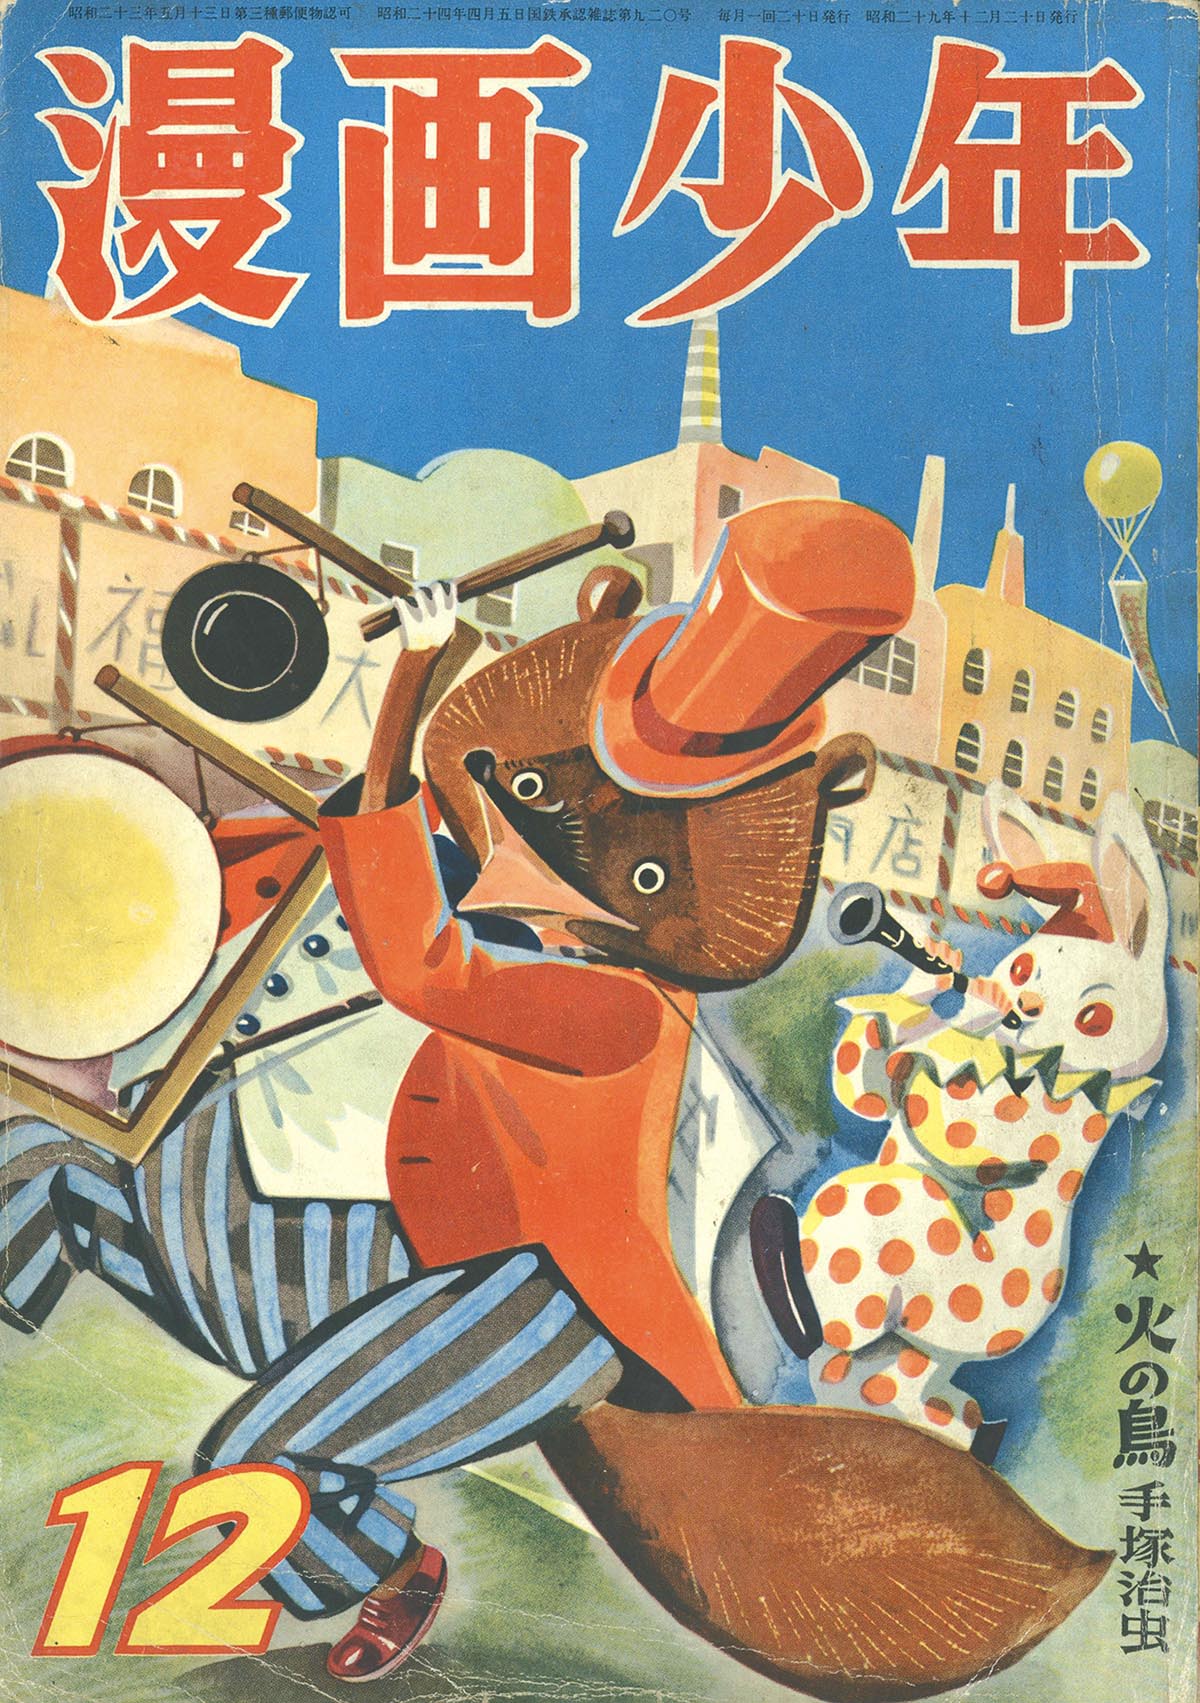 Manga Shonen 1954 (S29) December issue